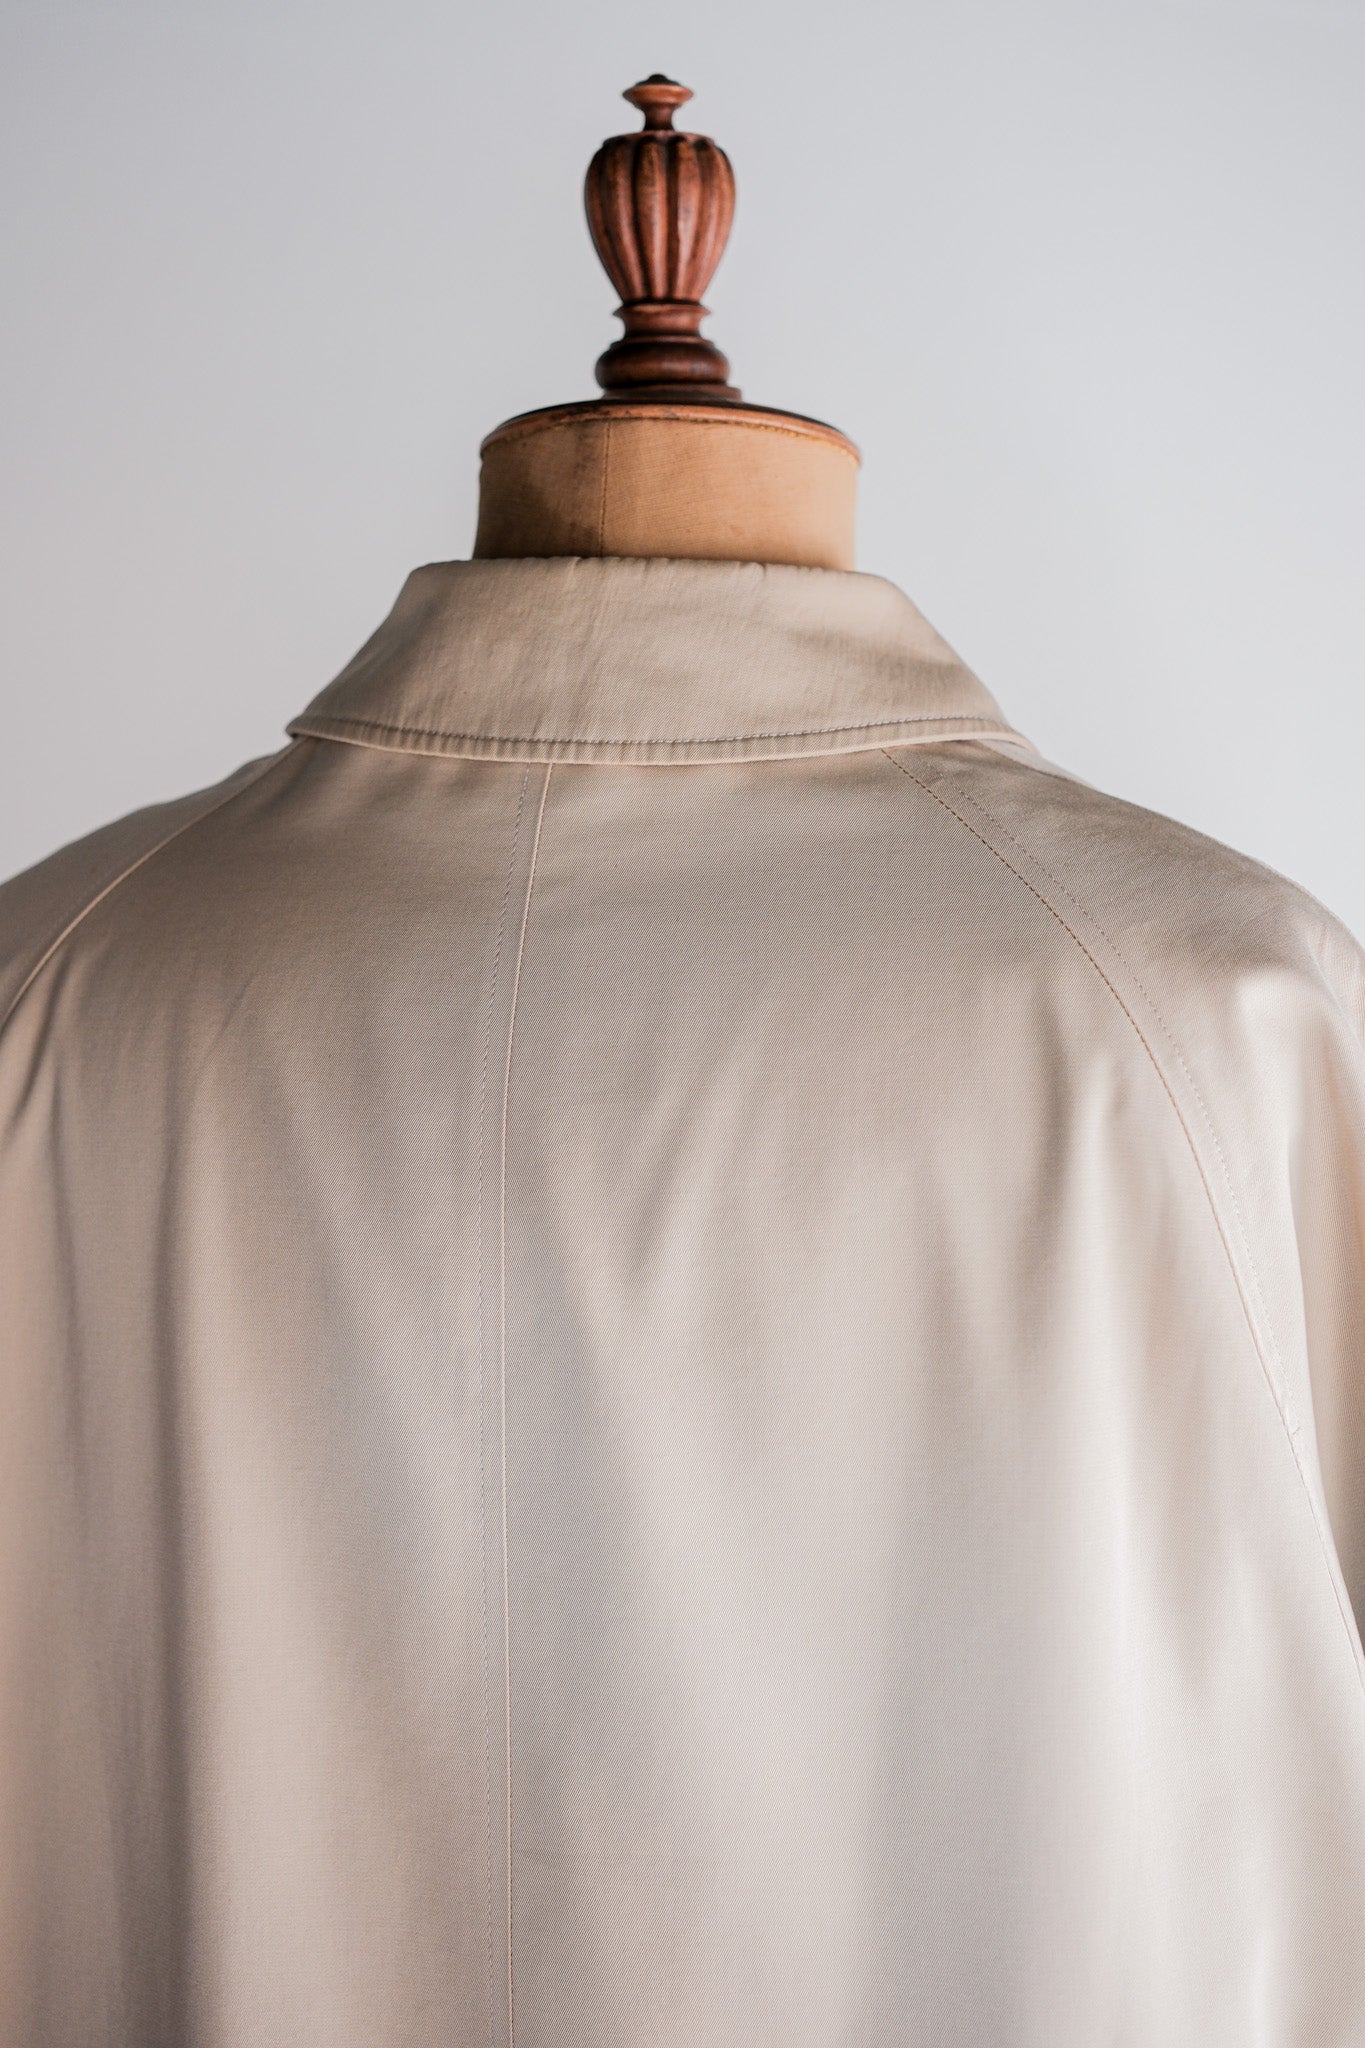 [~ 90 년대] Old Invertere Raglan Sleeve Balmacaan 코트 코트 코트 C100 크기 .42R "De Paz 별도의 음표"